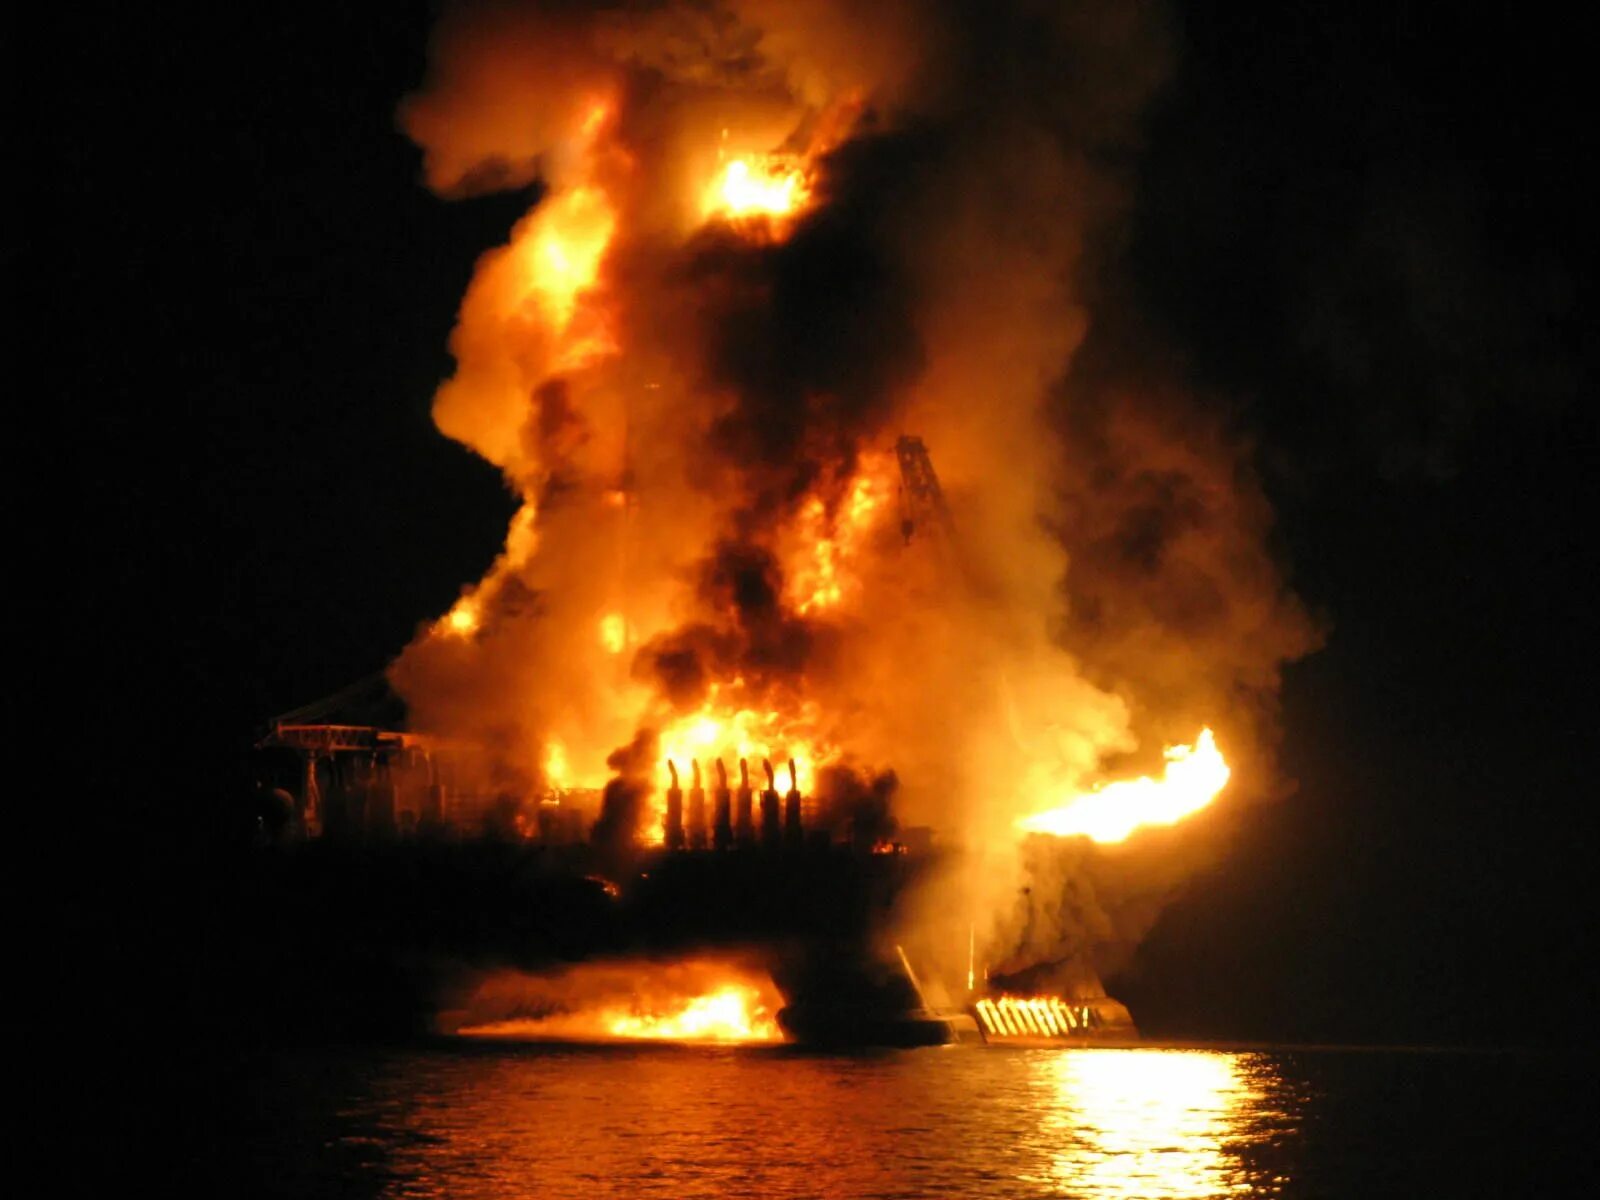 Грозящая катастрофа. Взрыв нефтяной платформы Deepwater Horizon 2010. Взрыв нефтяной платформы Deepwater Horizon - 20 апреля 2010 года. Авария на платформе Deepwater Horizon 20 апреля 2010 года. Глубоководный Горизонт катастрофа 2010.